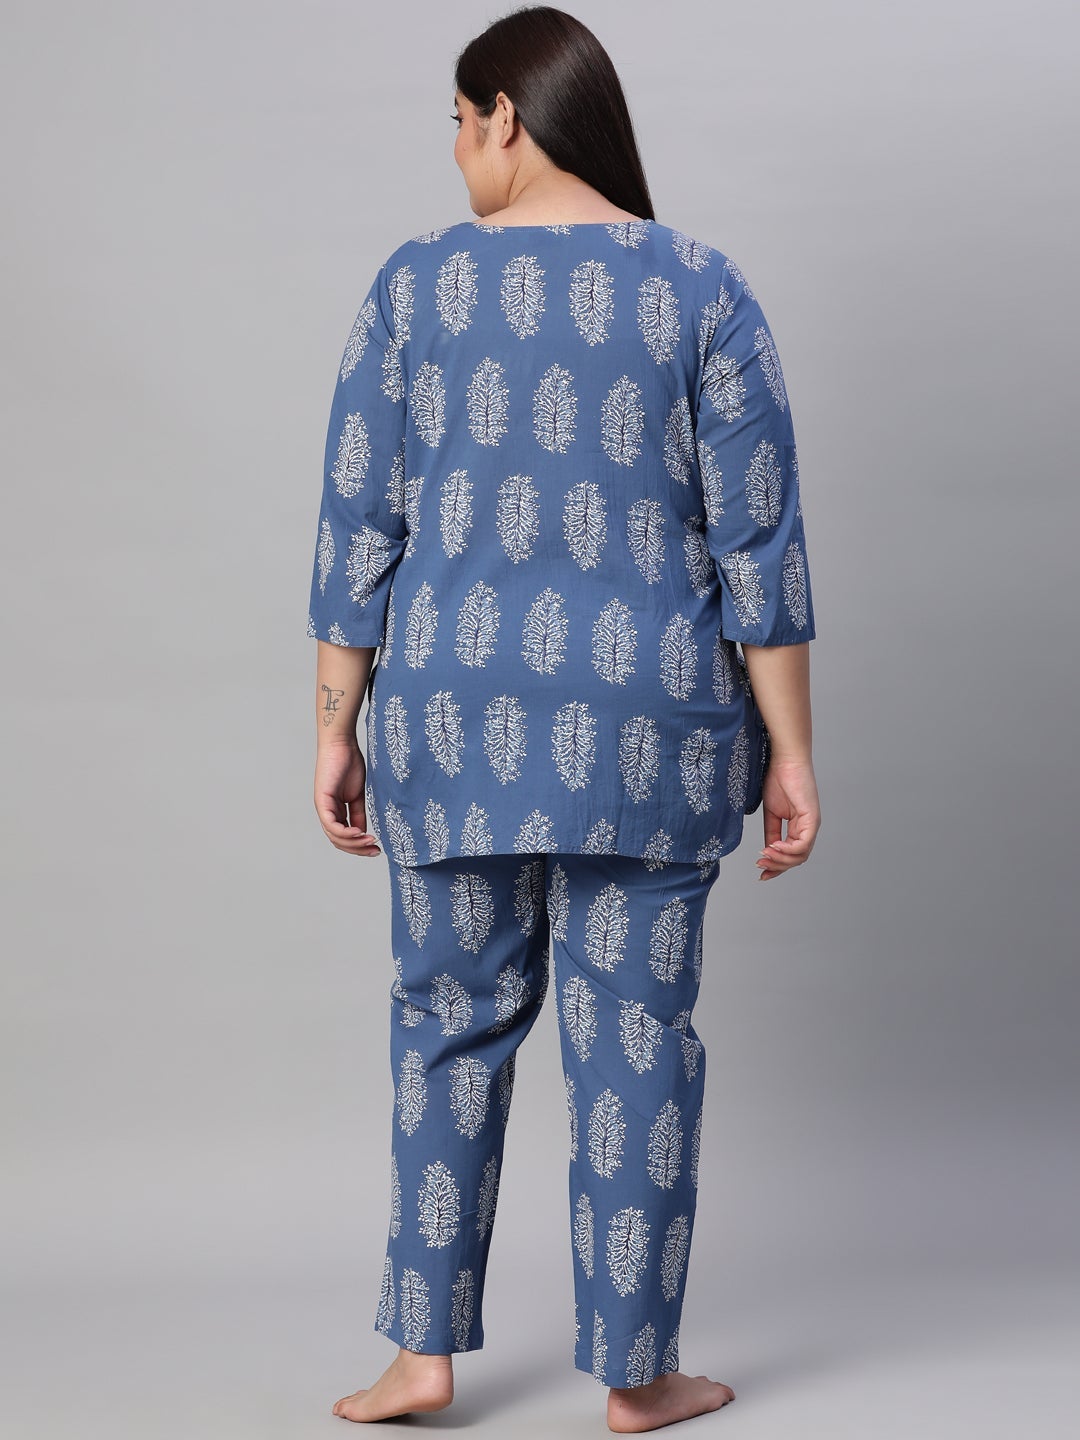 Blue Cotton Motif Print Short Kurta & Pyjamas